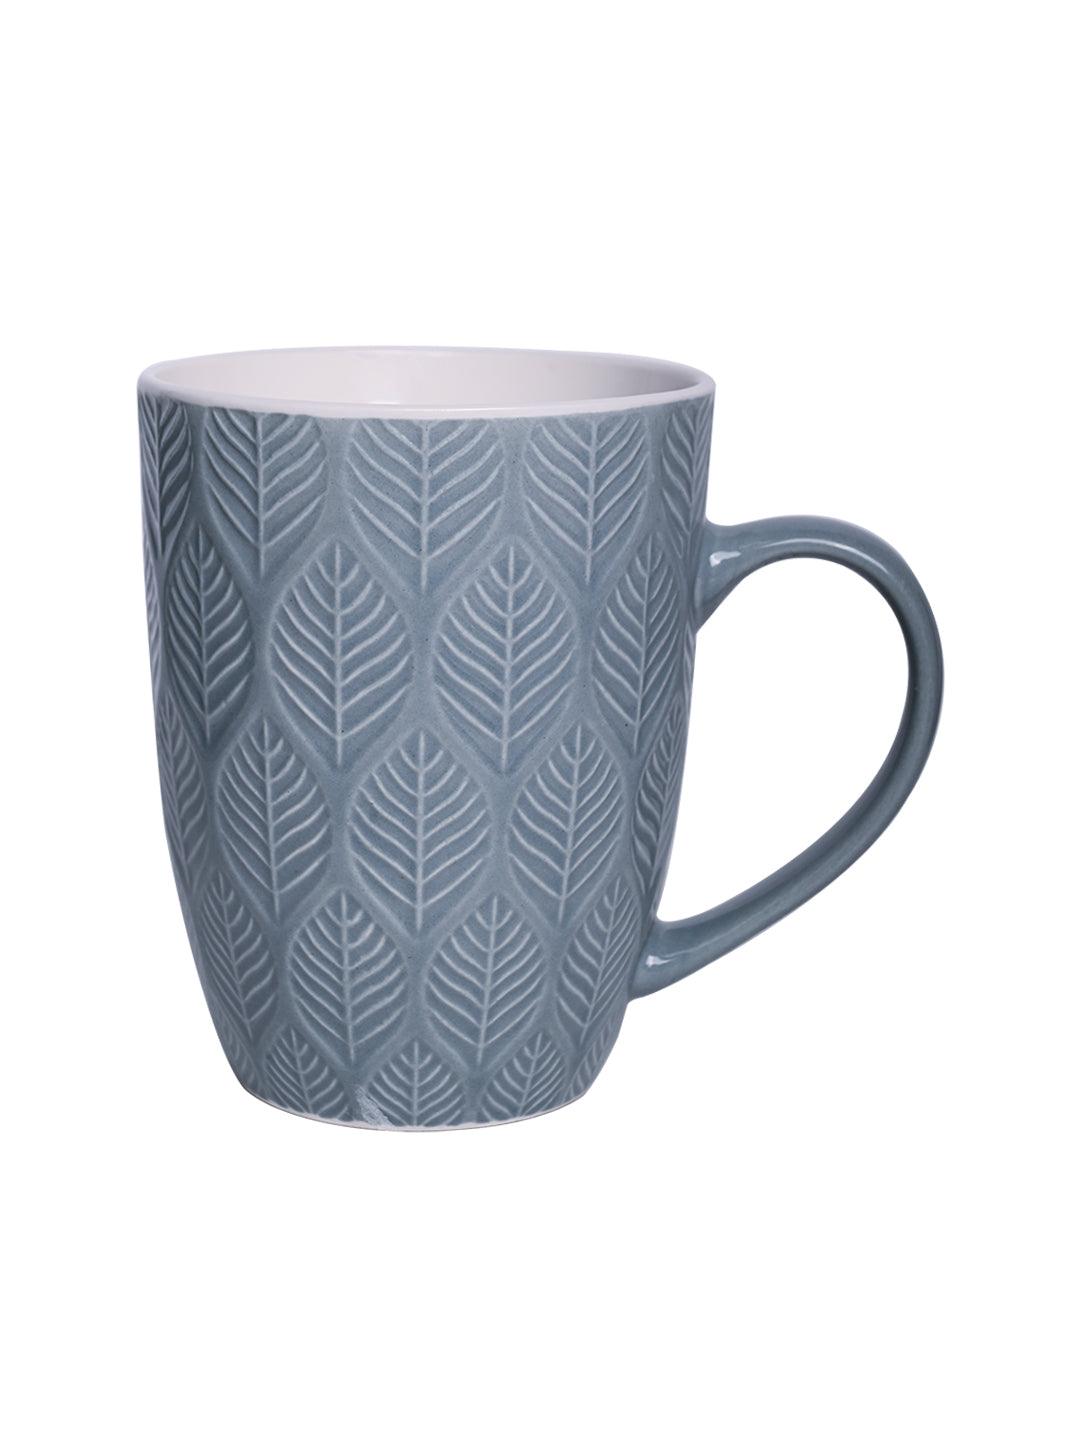 Lagoon Ceramic Mug - 360Ml, Leaf Pattern - MARKET 99